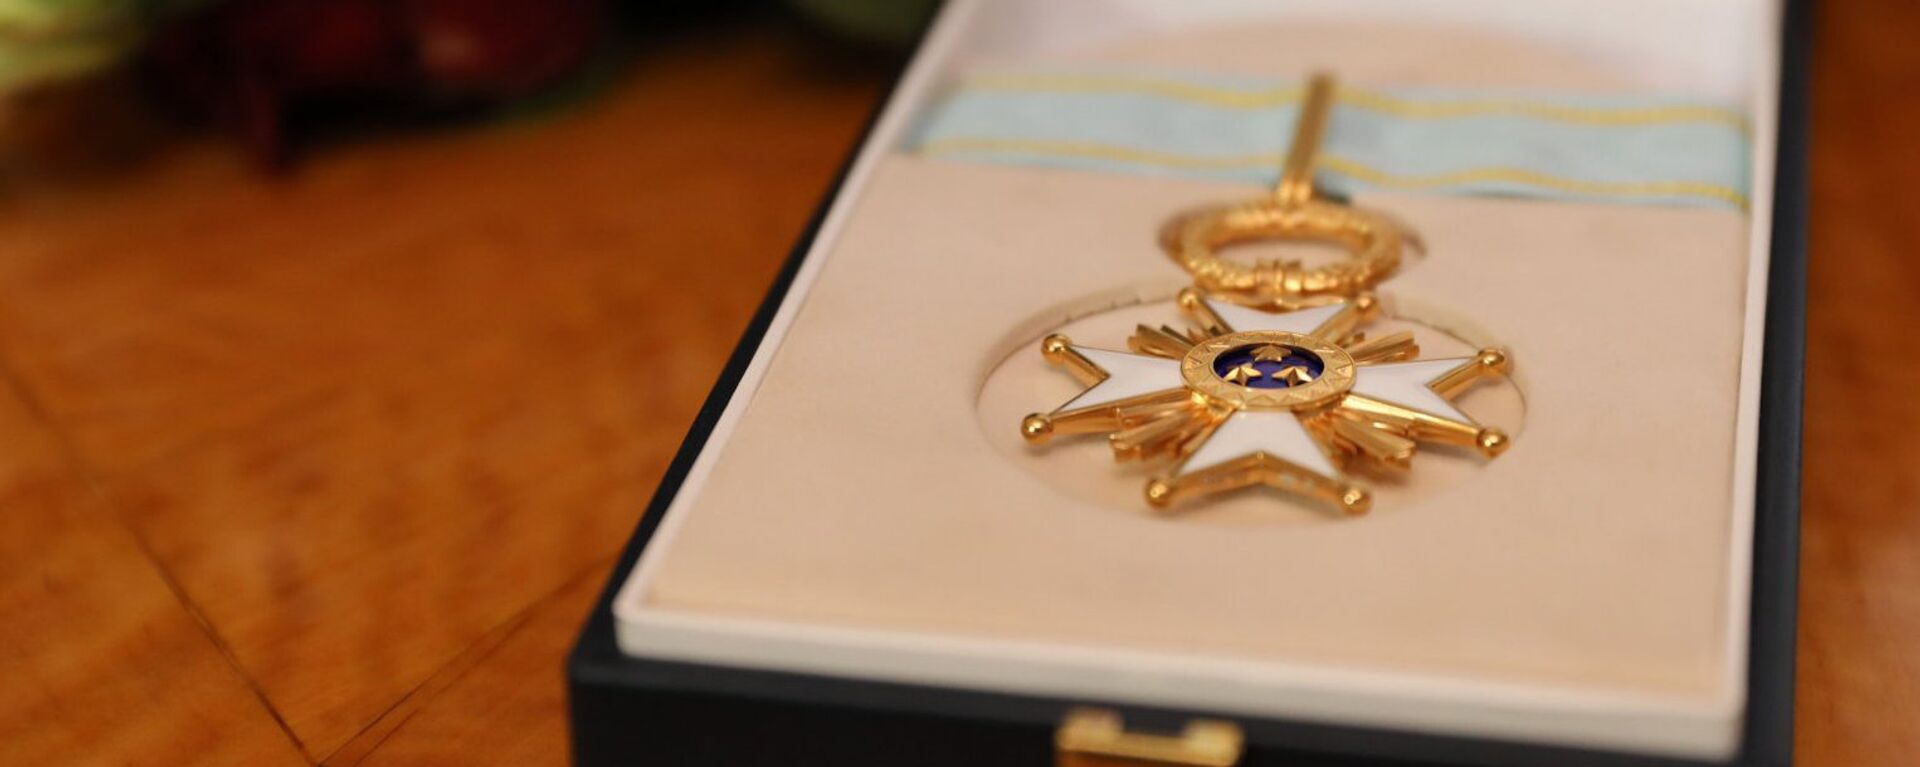 Орден Трех звезд — высшая государственная награда Латвийской Республики - Sputnik Латвия, 1920, 11.11.2021